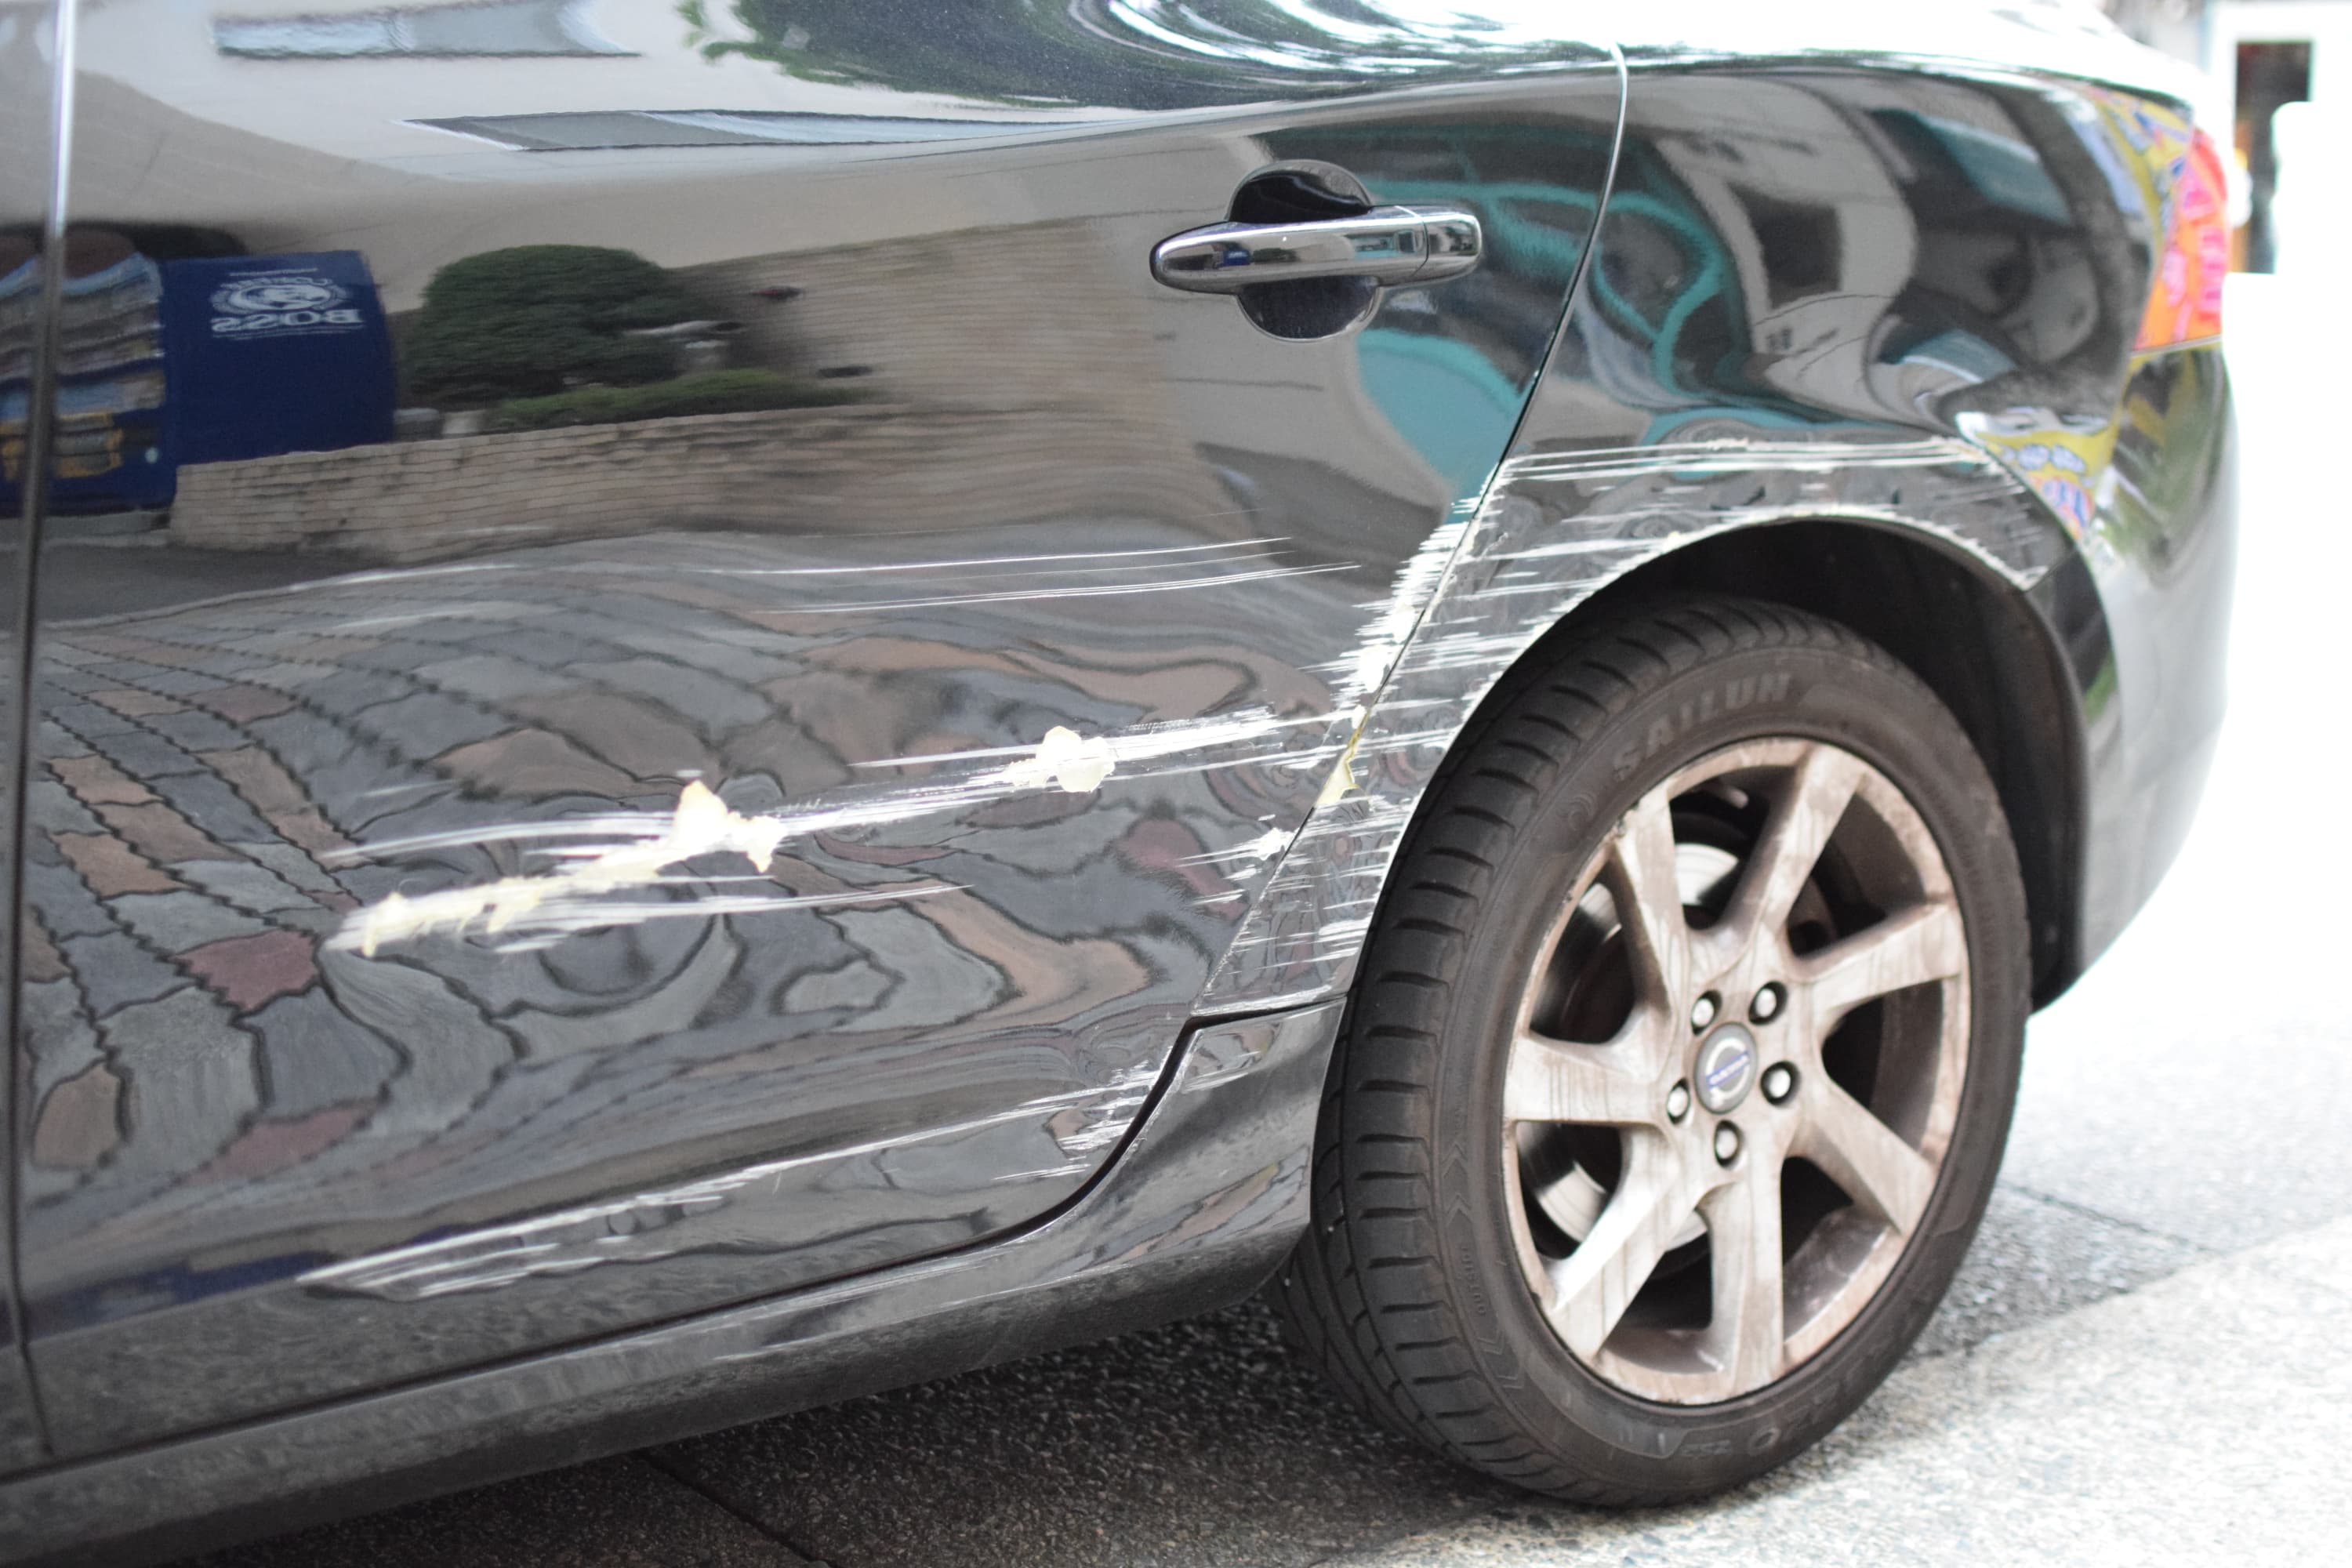 福岡で板金塗装 事故での自動車修理がどこよりも安くて丁寧がモットー